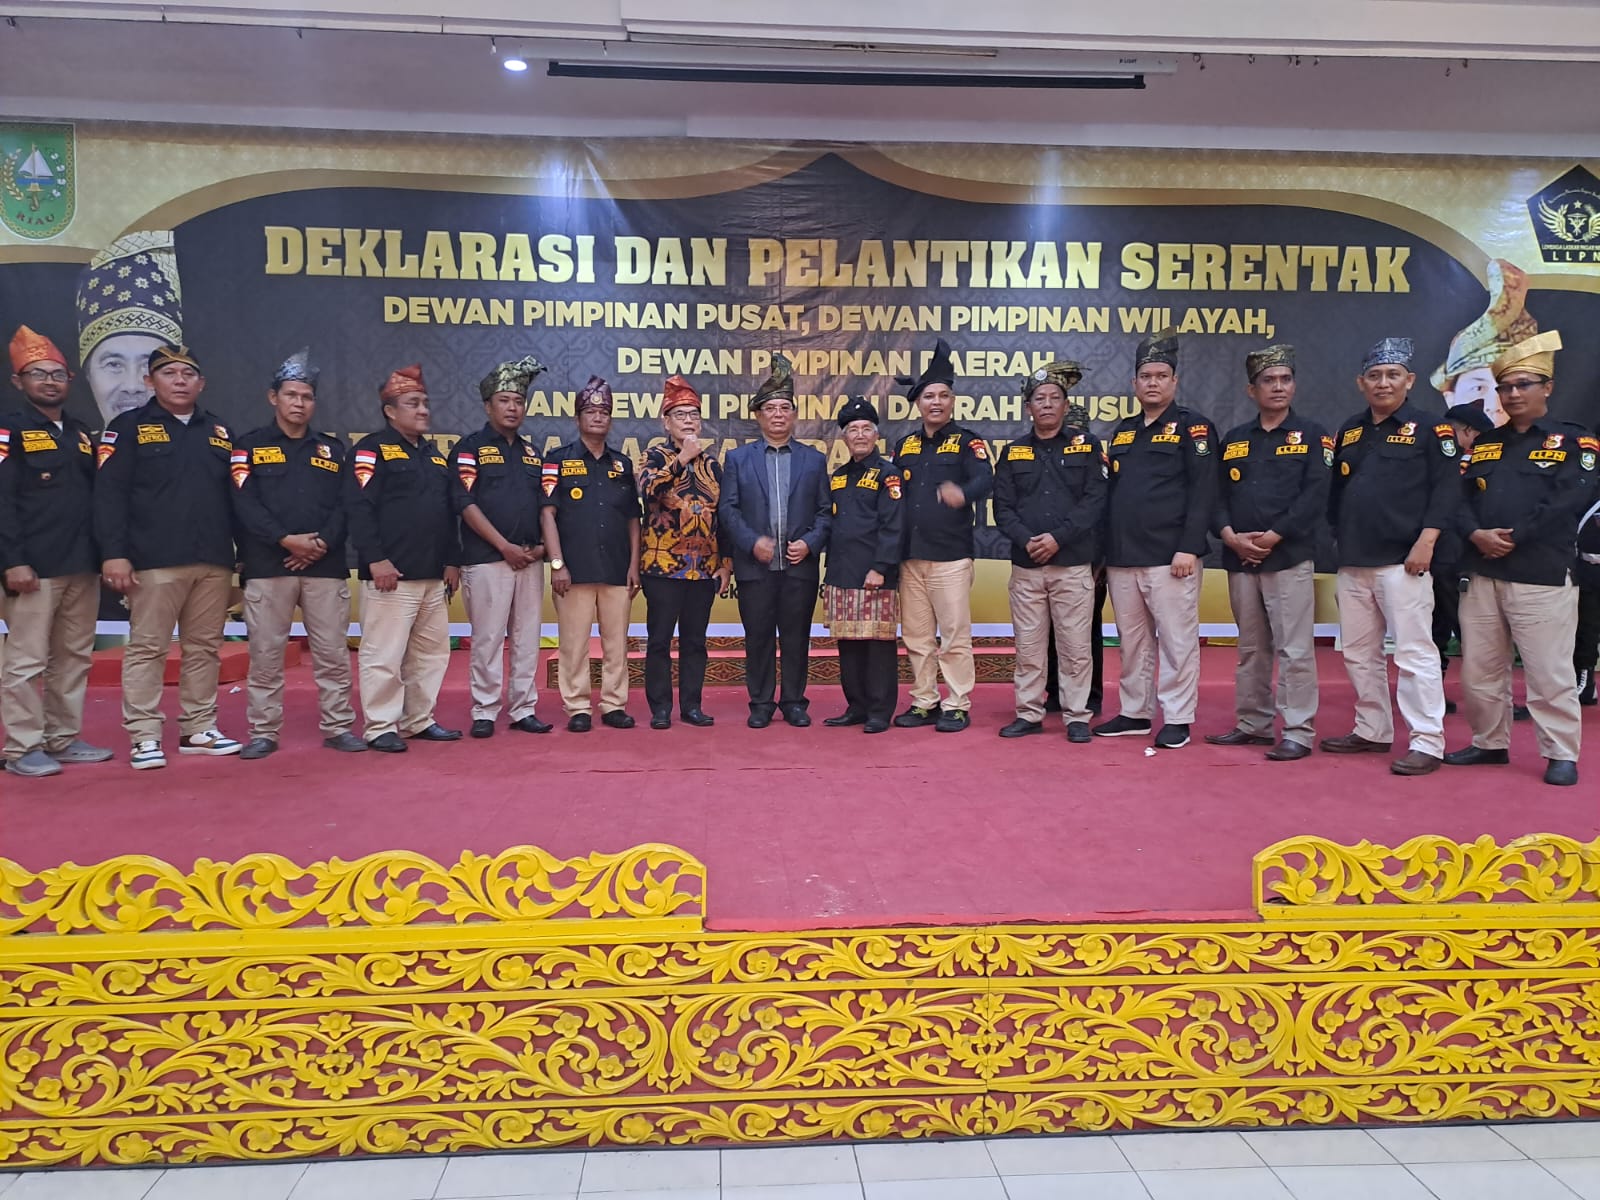 Lembaga Laskar Pagar Negri LLPN Deklarasi Dan Pelantikan Serentak Se-Riau